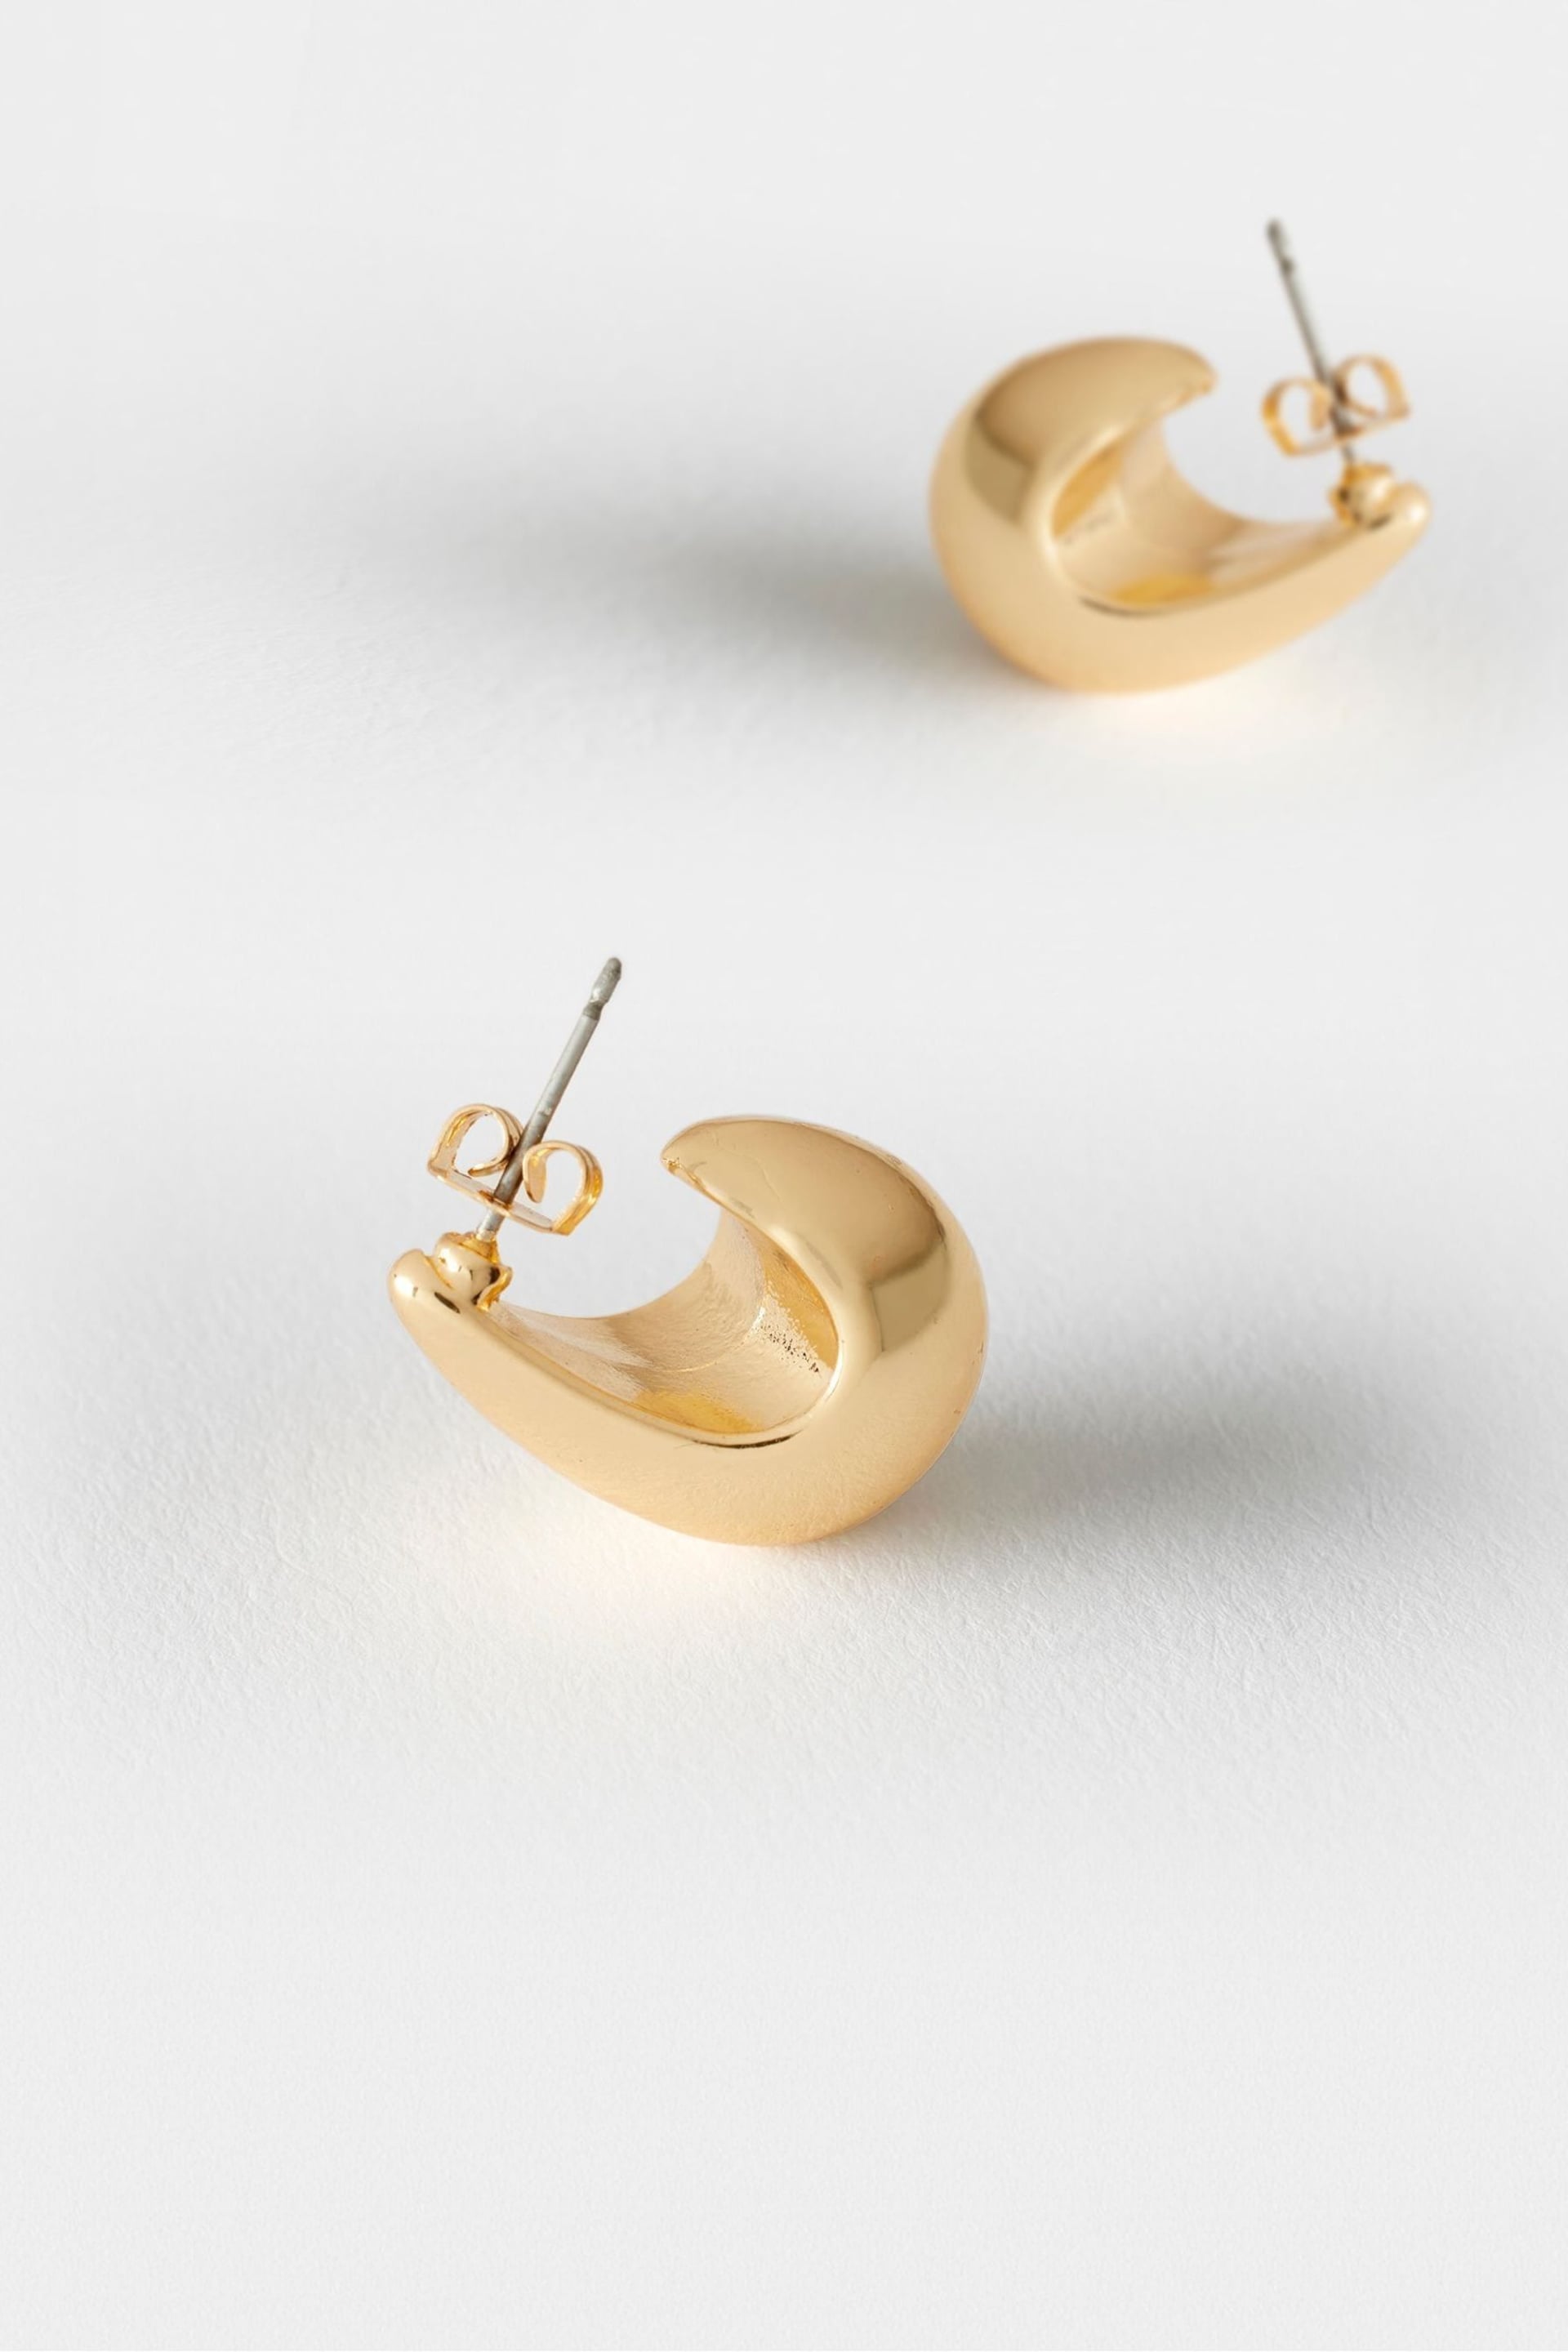 Mint Velvet Gold Tone Drop Earrings - Image 3 of 3